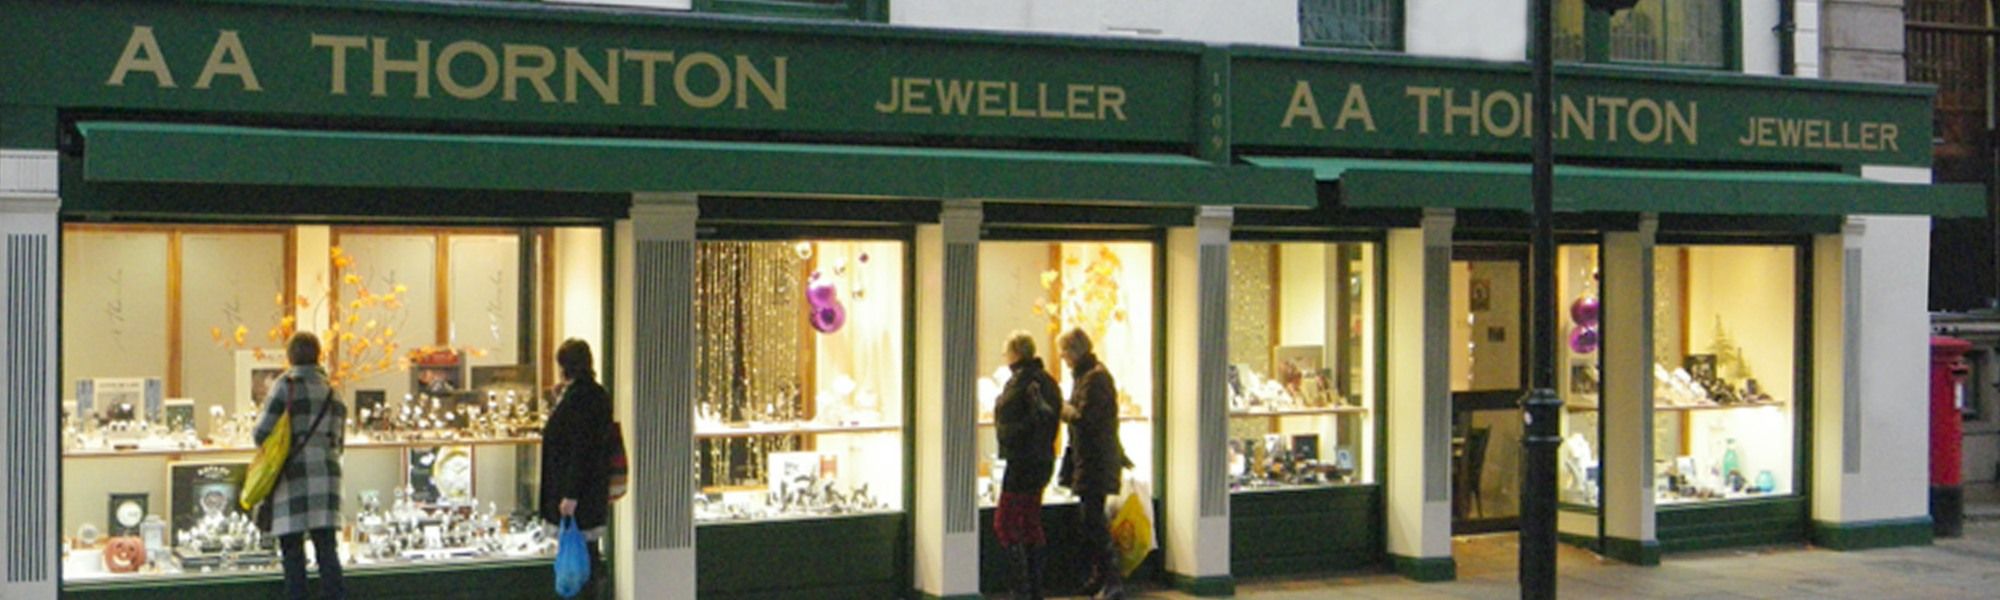 aa thornton jewellery shop window kettering